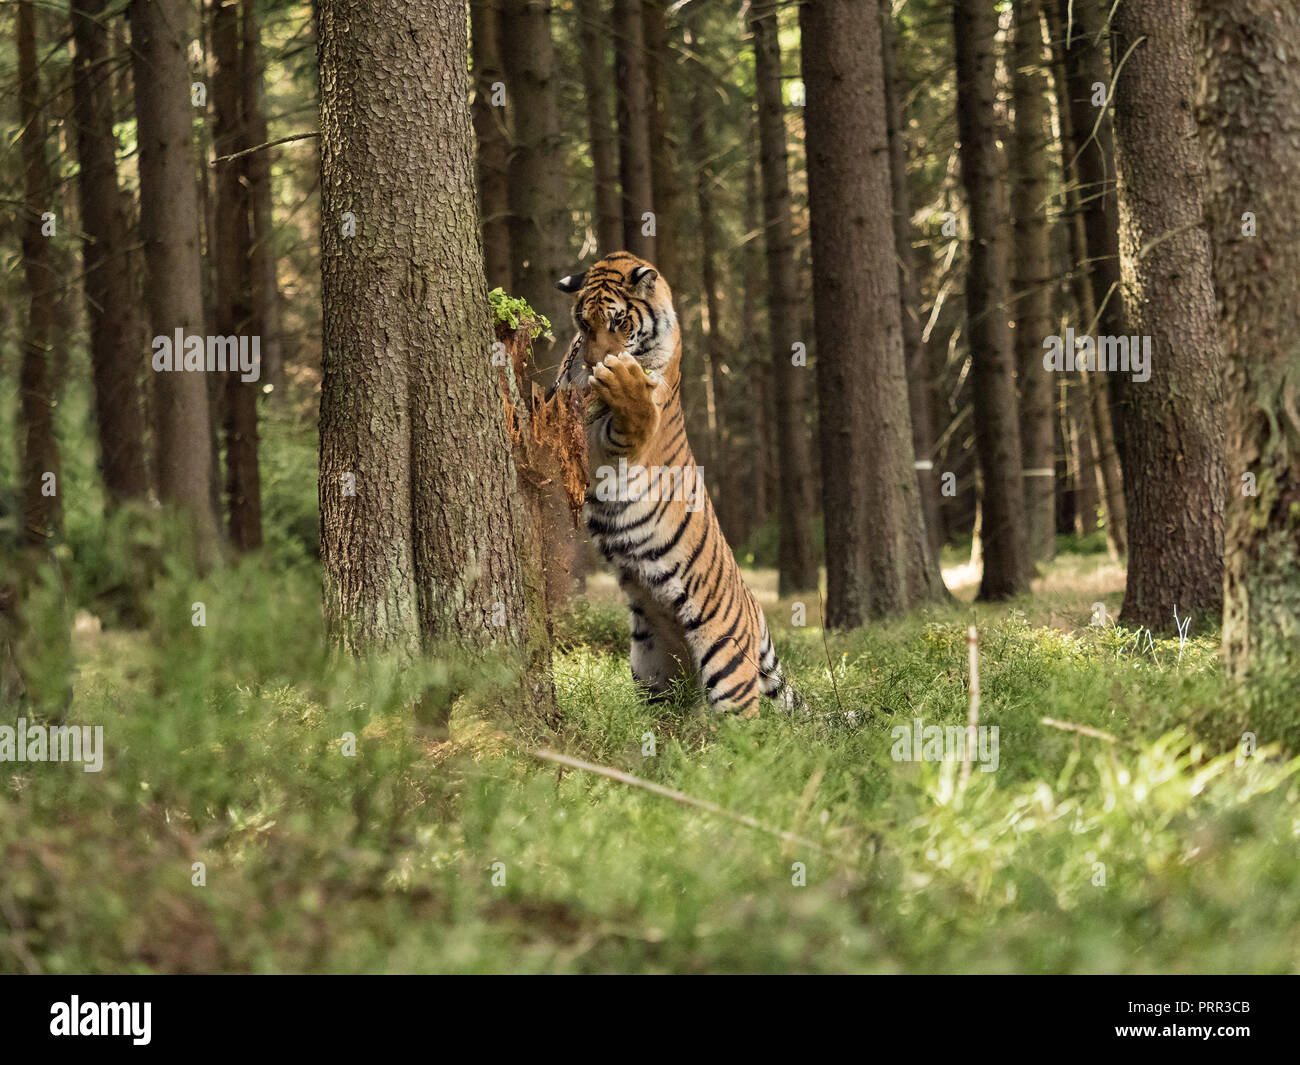 Ritratto di Tiger. Un grande tiger si arrampica su un albero in una foresta. Tigre nella natura selvaggia. Azione scena della fauna selvatica, pericolo animale. Splendida tigre siberiana in tajga. Foto Stock